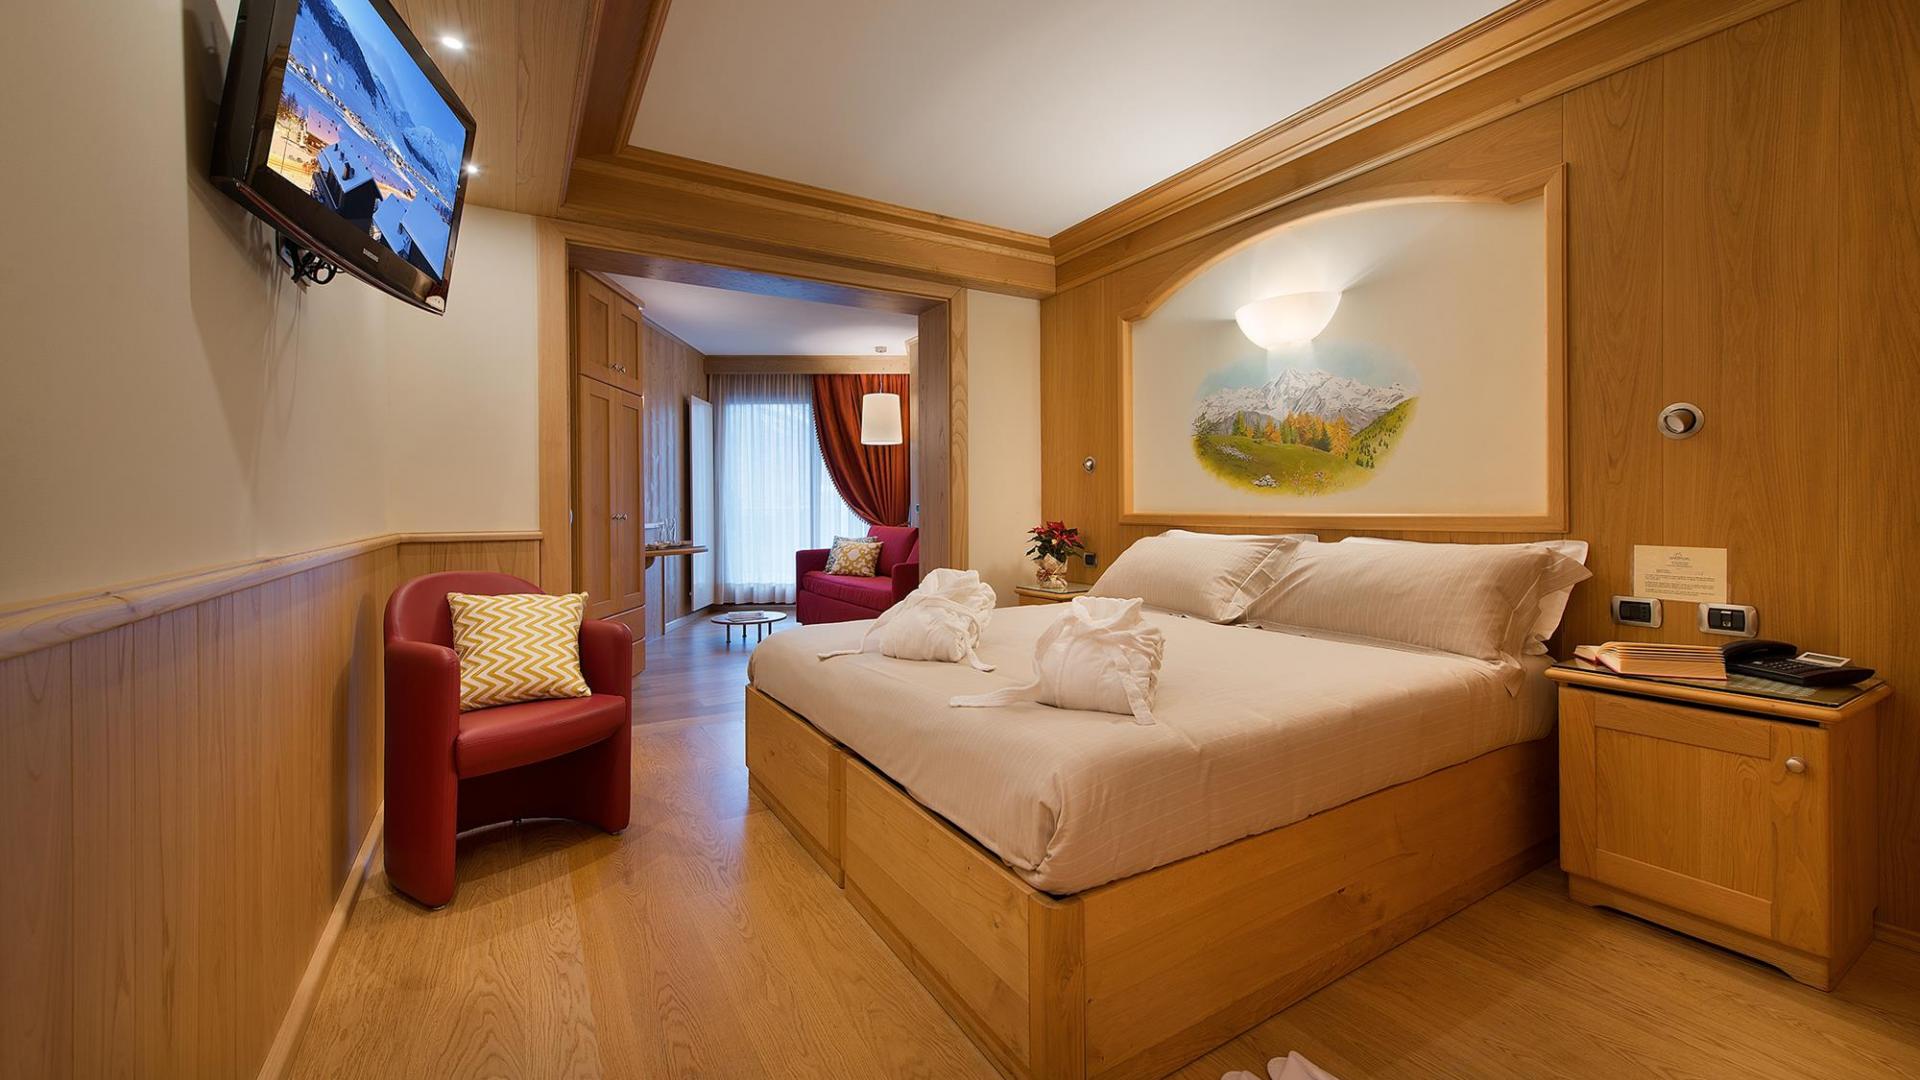 Junior Suite - Hotel Baita Montana Livigno